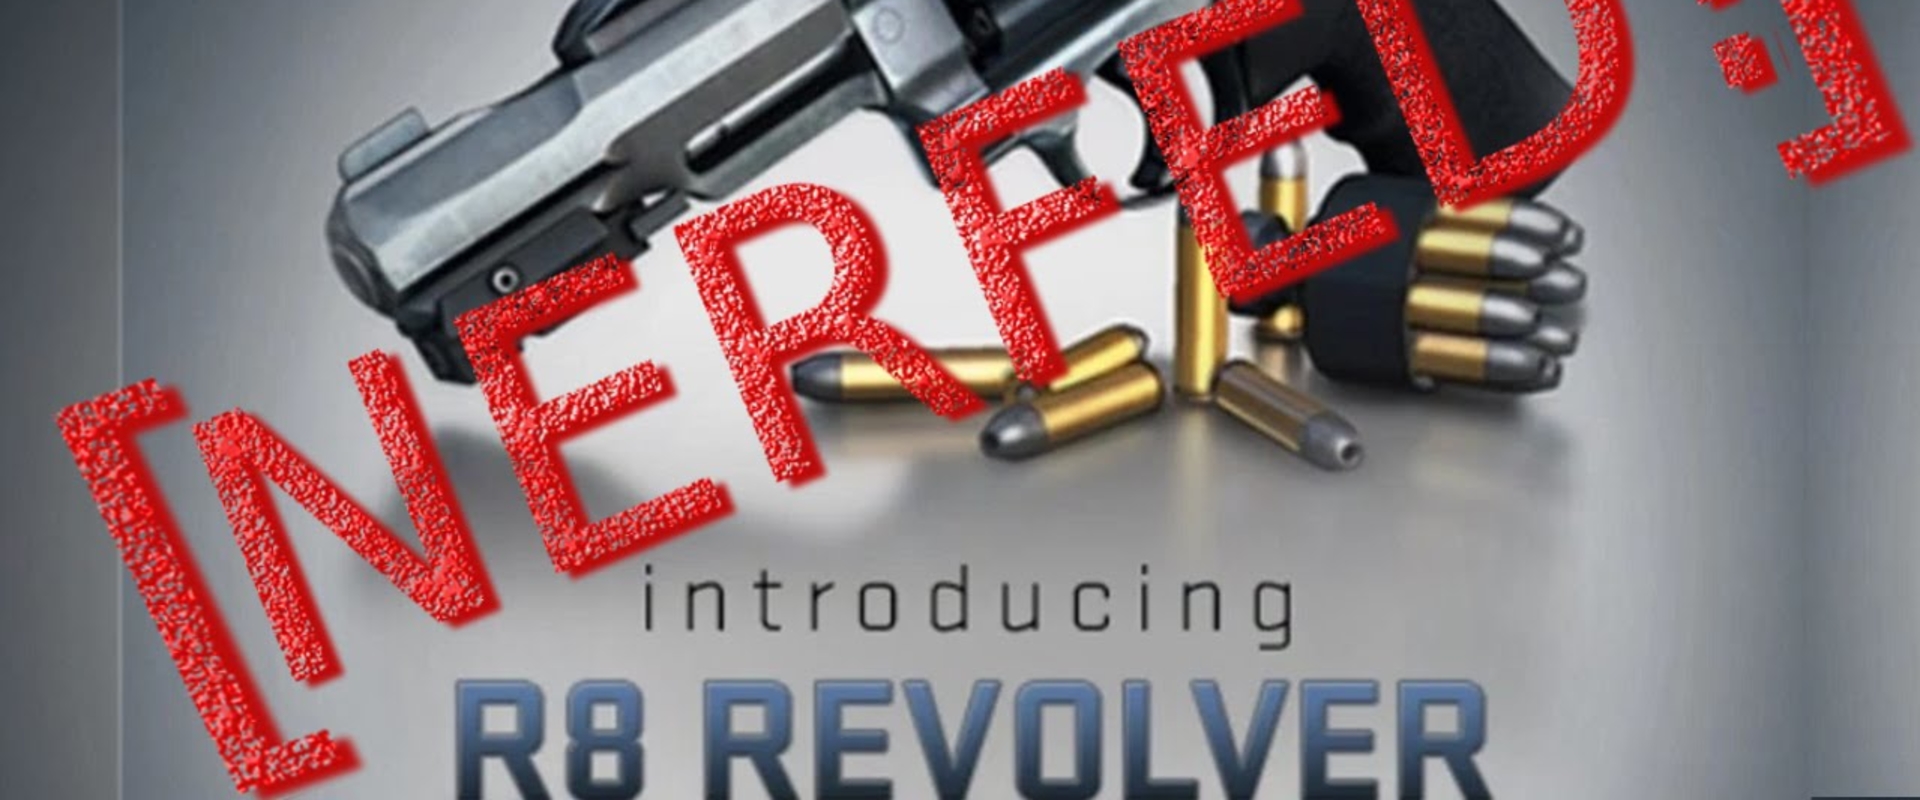 RiP R8, avagy a revolver születése és bukása